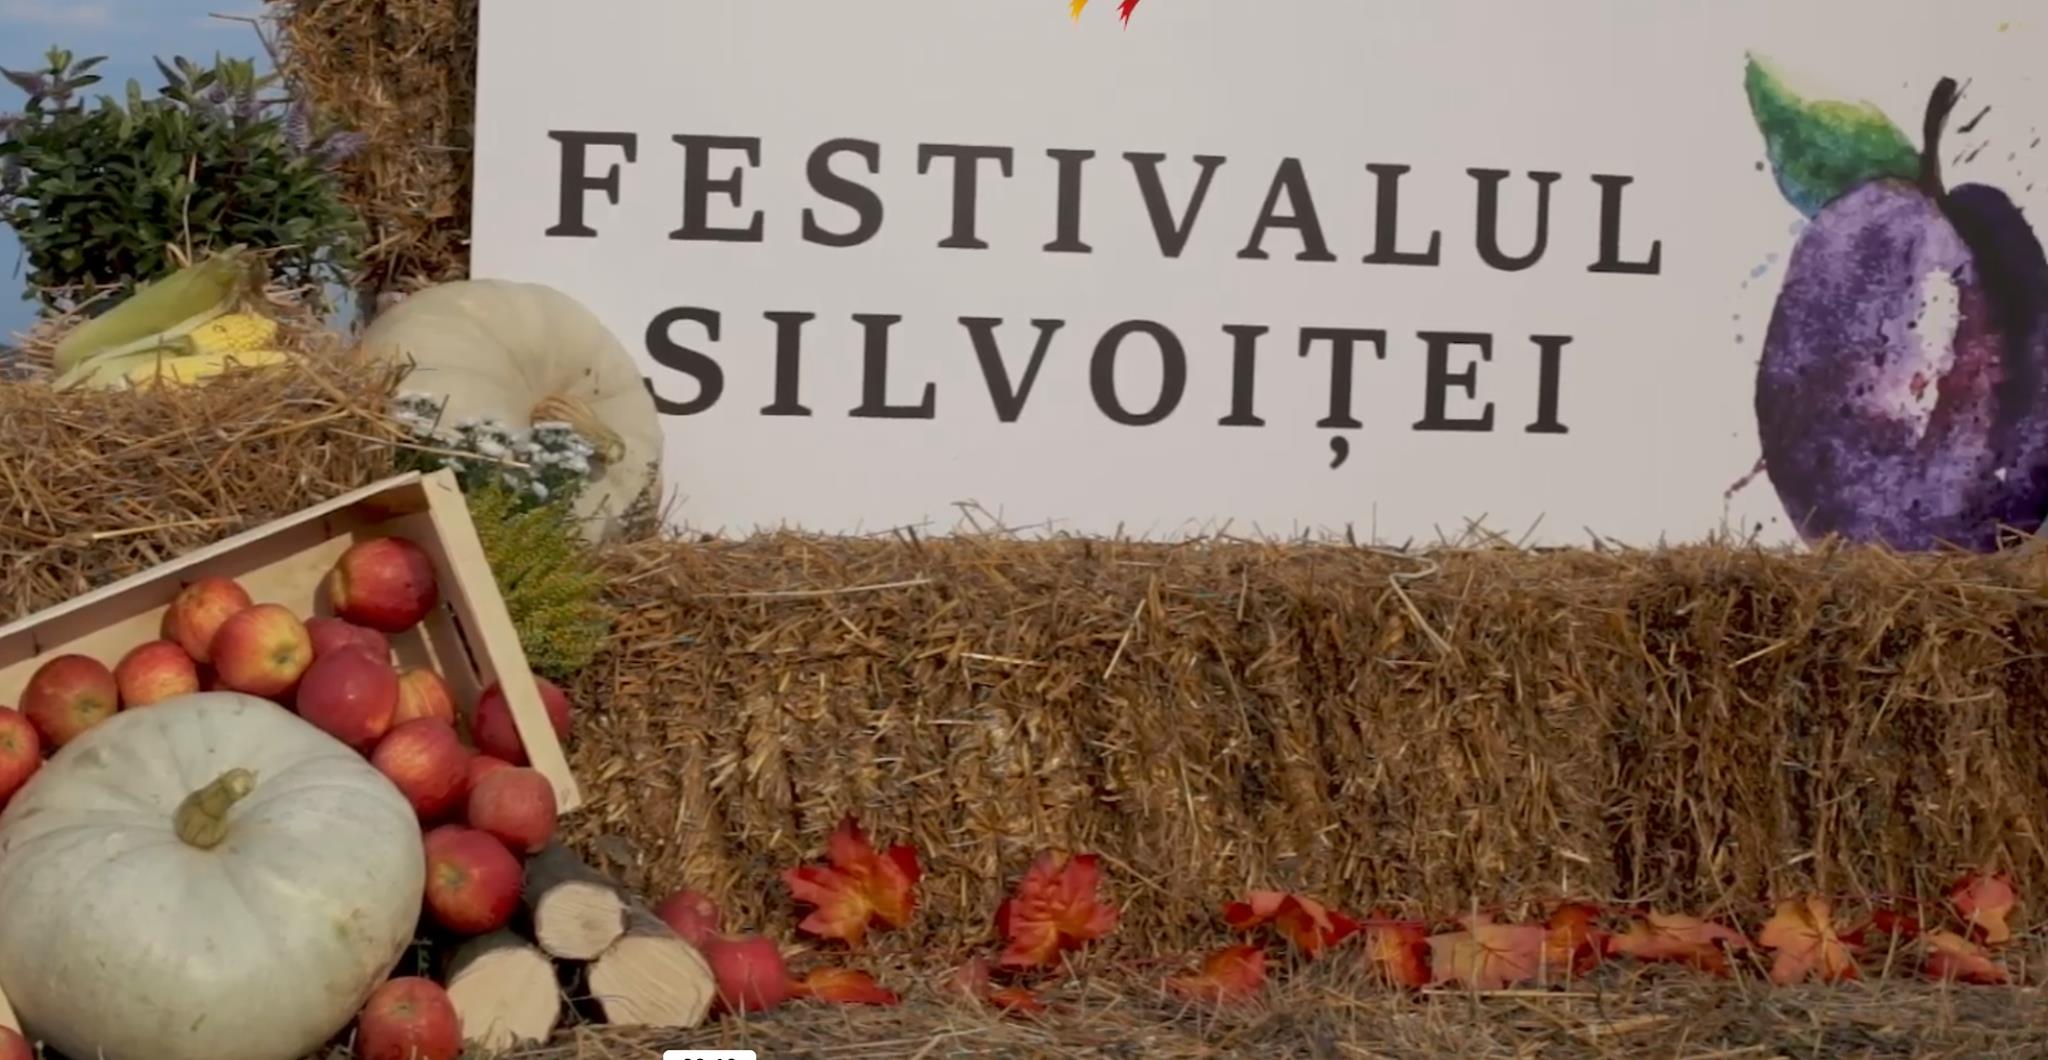 Festivalul Silvoiței 2022 la Vultureni, județul Cluj, două zile de toamnă în armonie cu natura